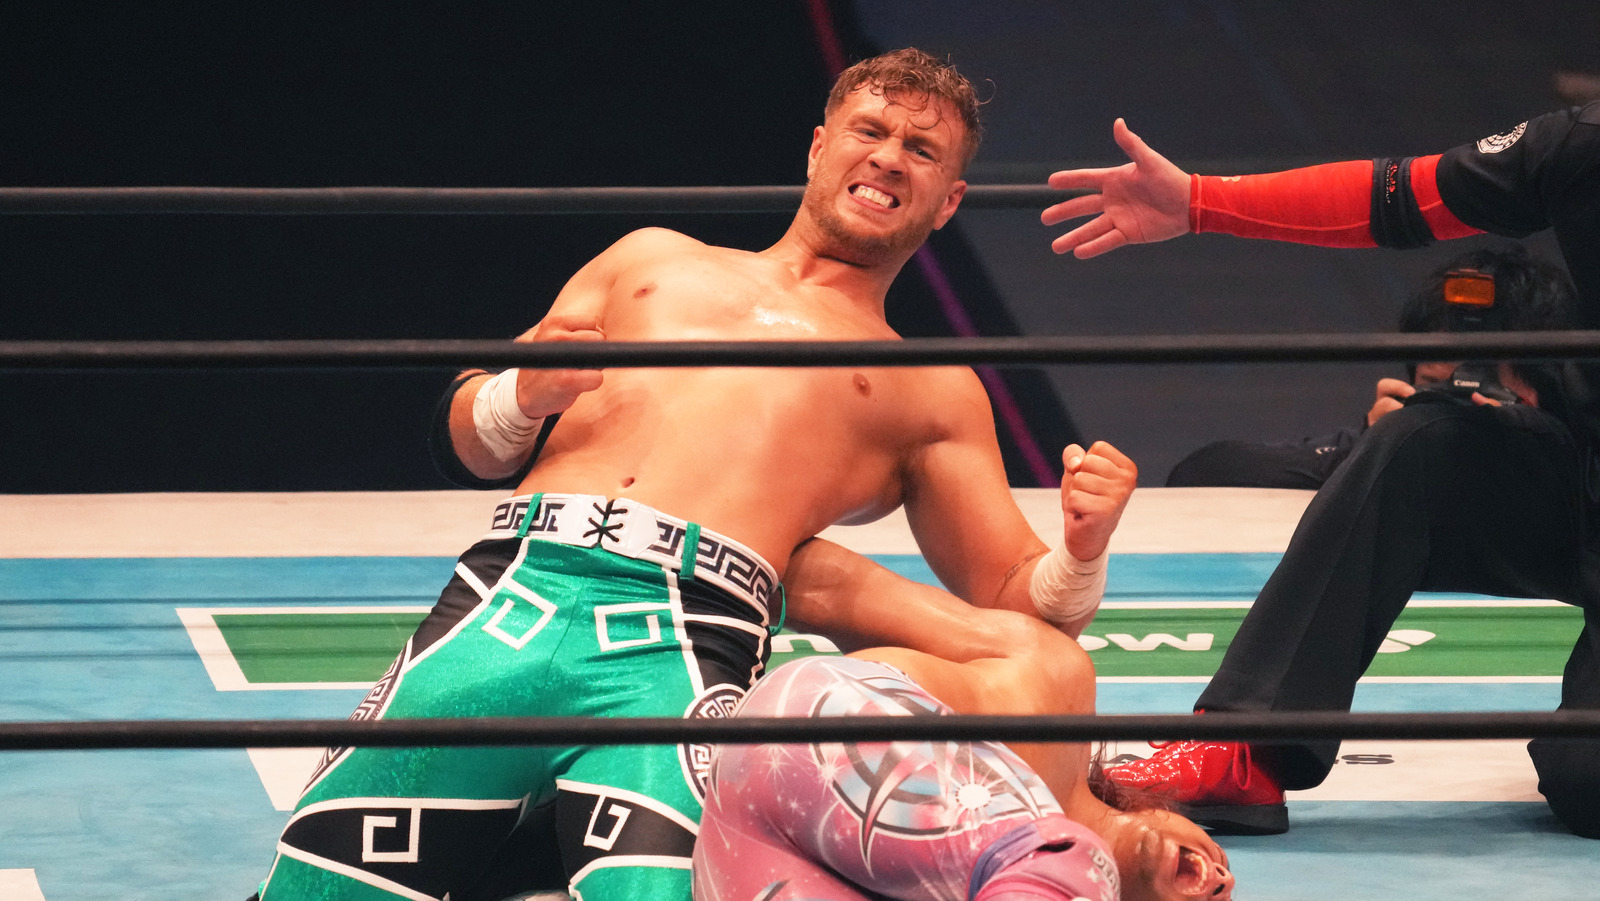 Detalles sobre el nuevo acuerdo televisivo de NJPW con AXS TV